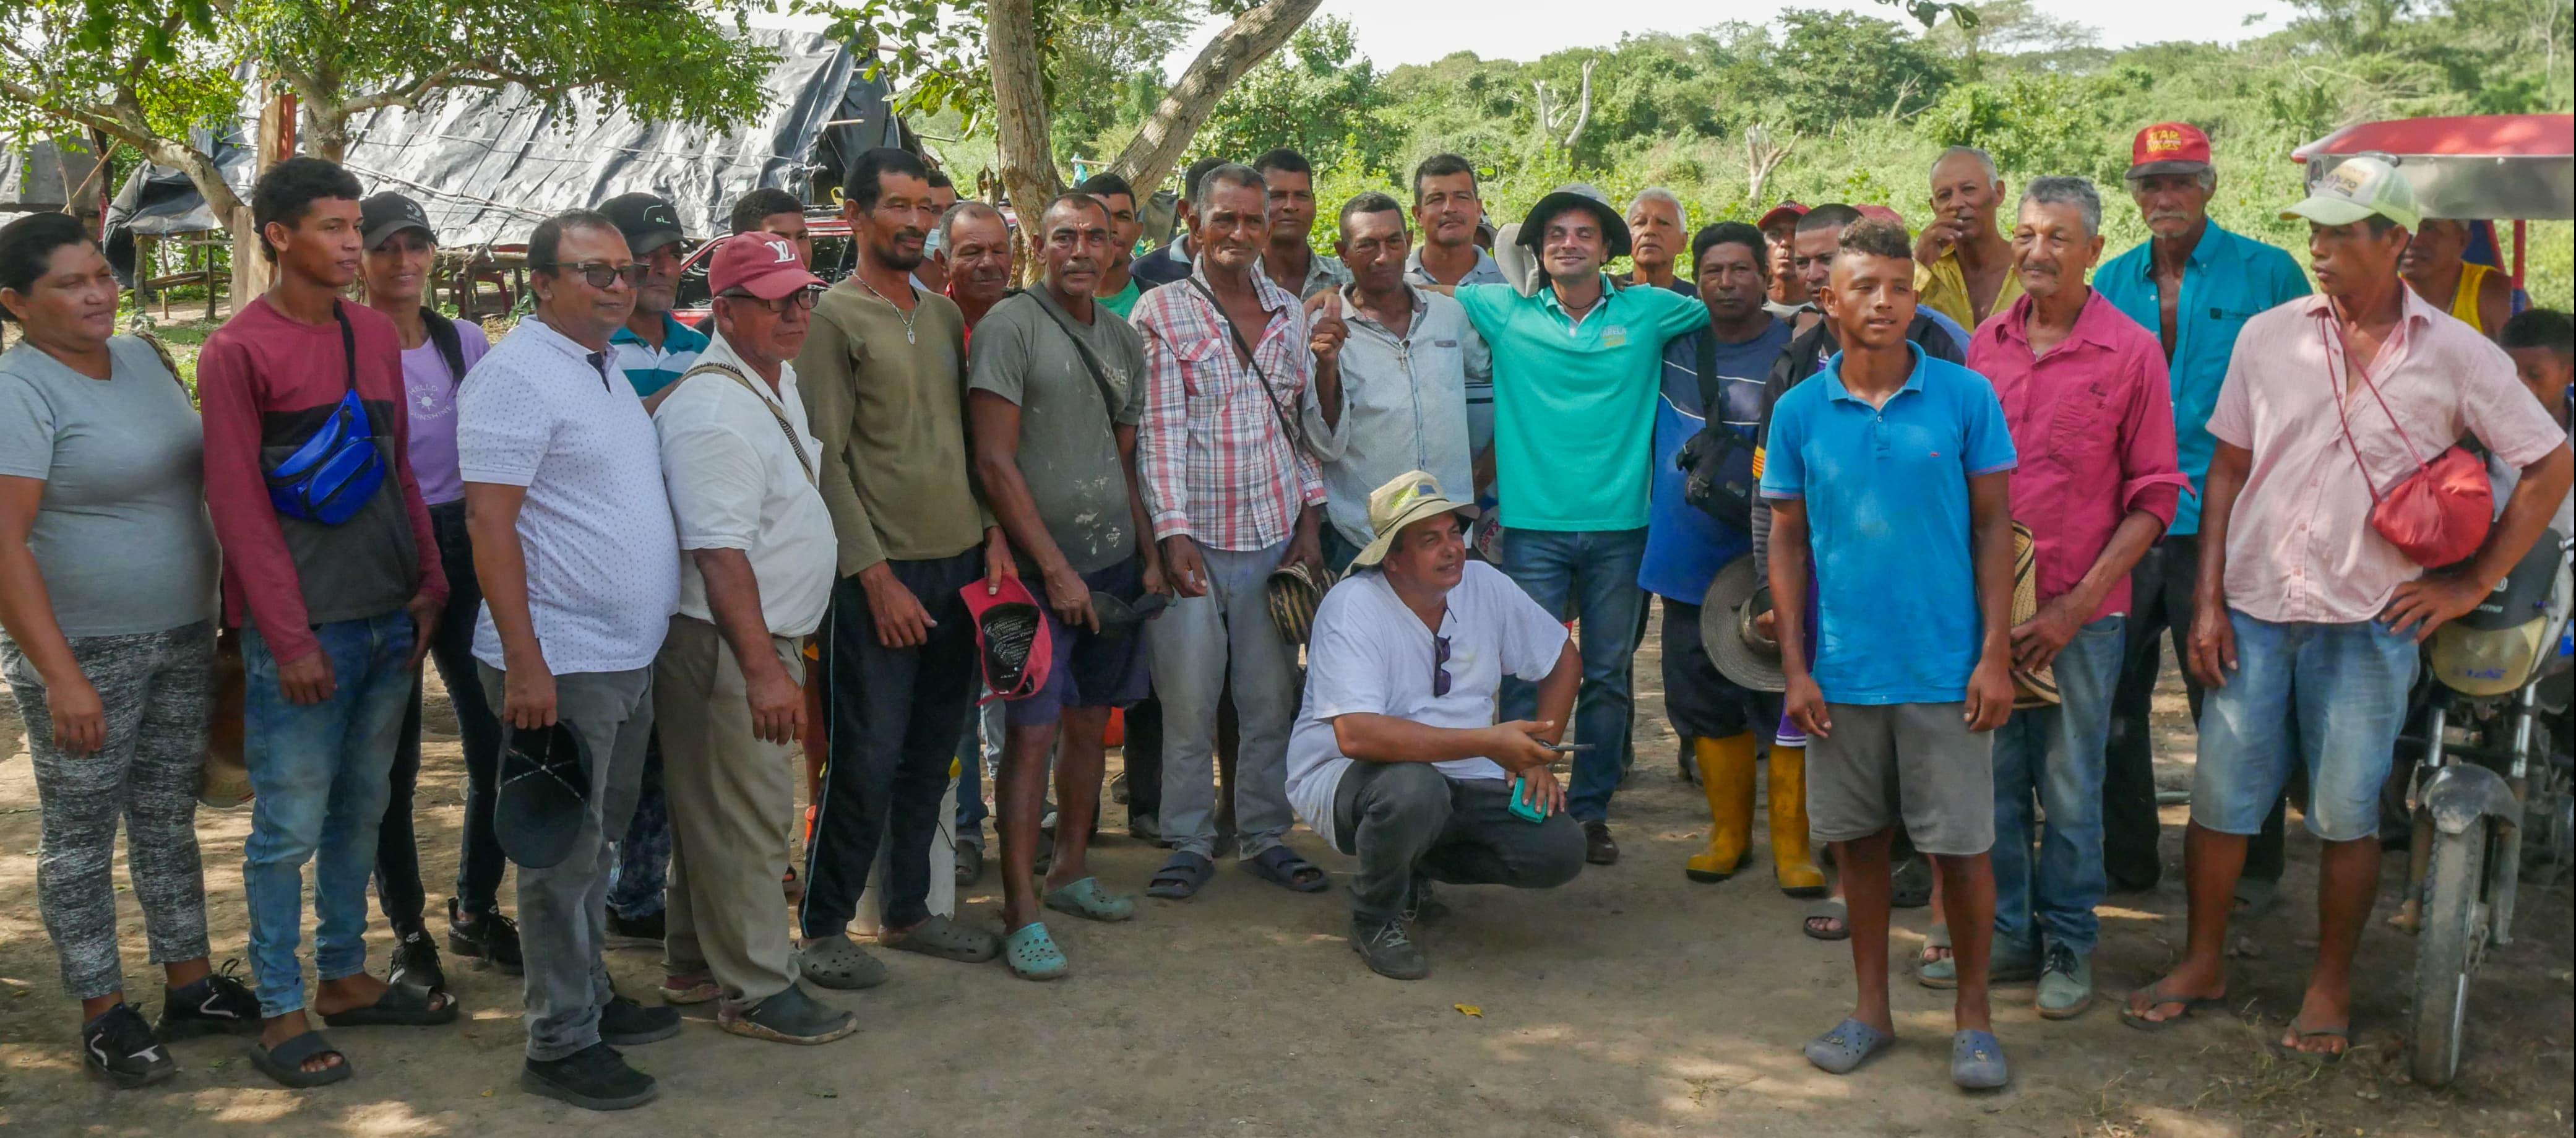 El candidato Alfredo Varela con campesinos y pescadores en la ciénaga del Uvero, Ponedera